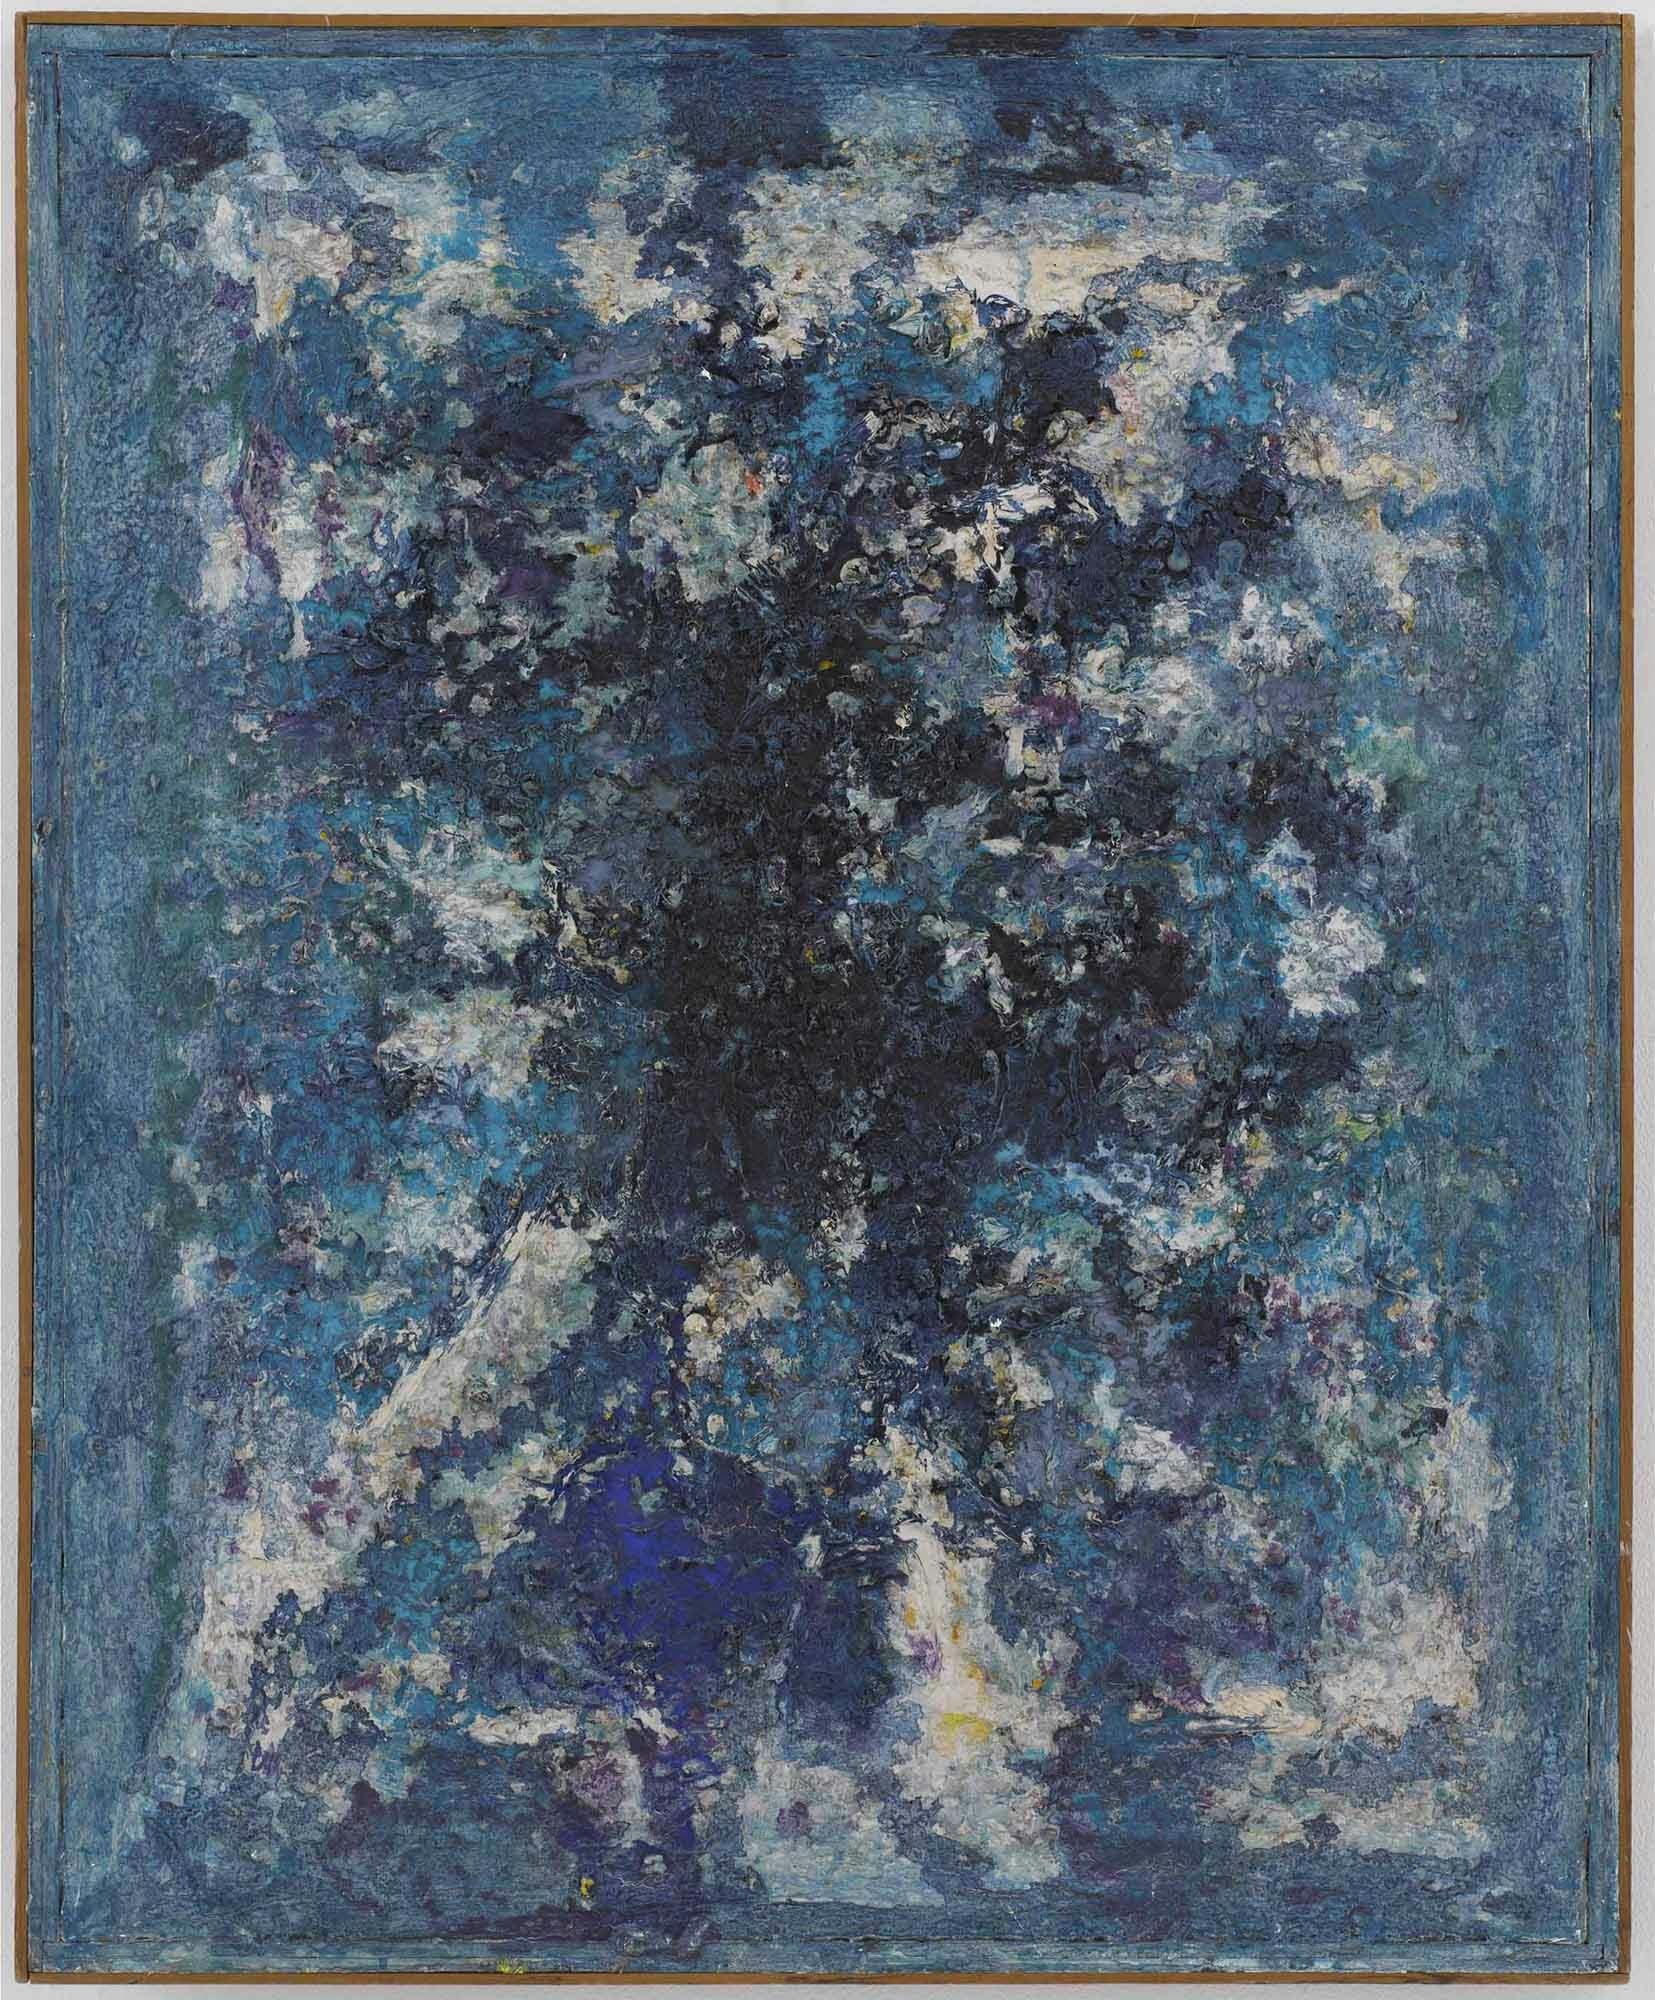 Blue Scroll
1958
Oil on linen in artist's frame
37 x 29 1/2 in. (94 x 74.9 cm)
 – The Richard Pousette-Dart Foundation